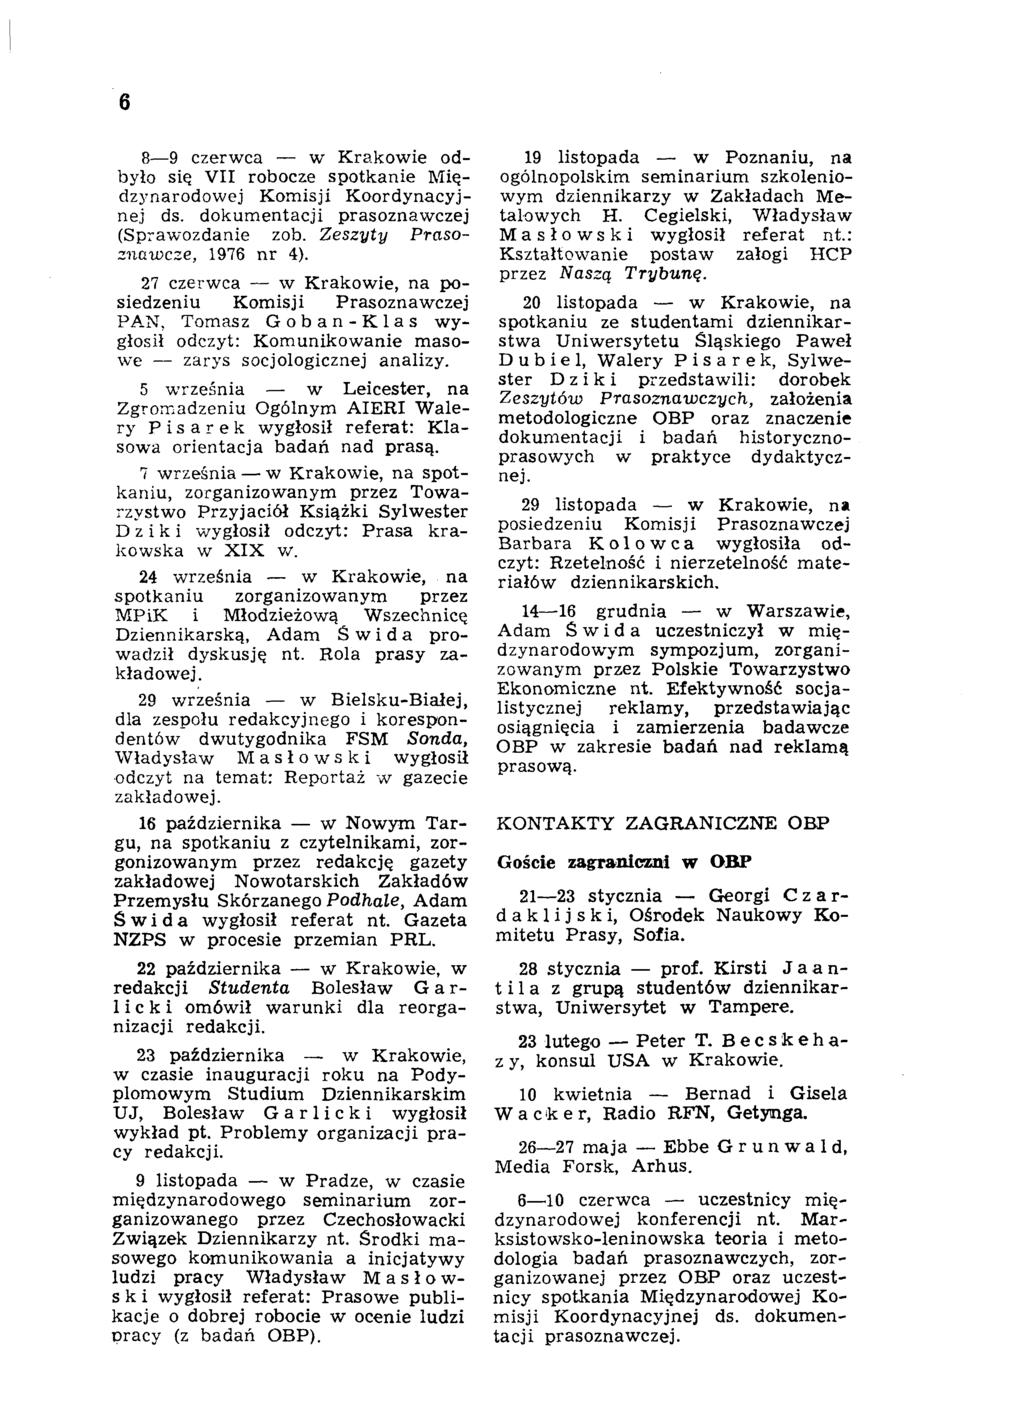 6 8 9 czerwca w Krakowie odbyło się VII robocze spotkanie Międzynarodowej Komisji Koordynacyjnej ds. dokumentacji prasoznawczej (Sprawozdanie zob. Zeszyty Prasoznawcze, 1976 nr 4).